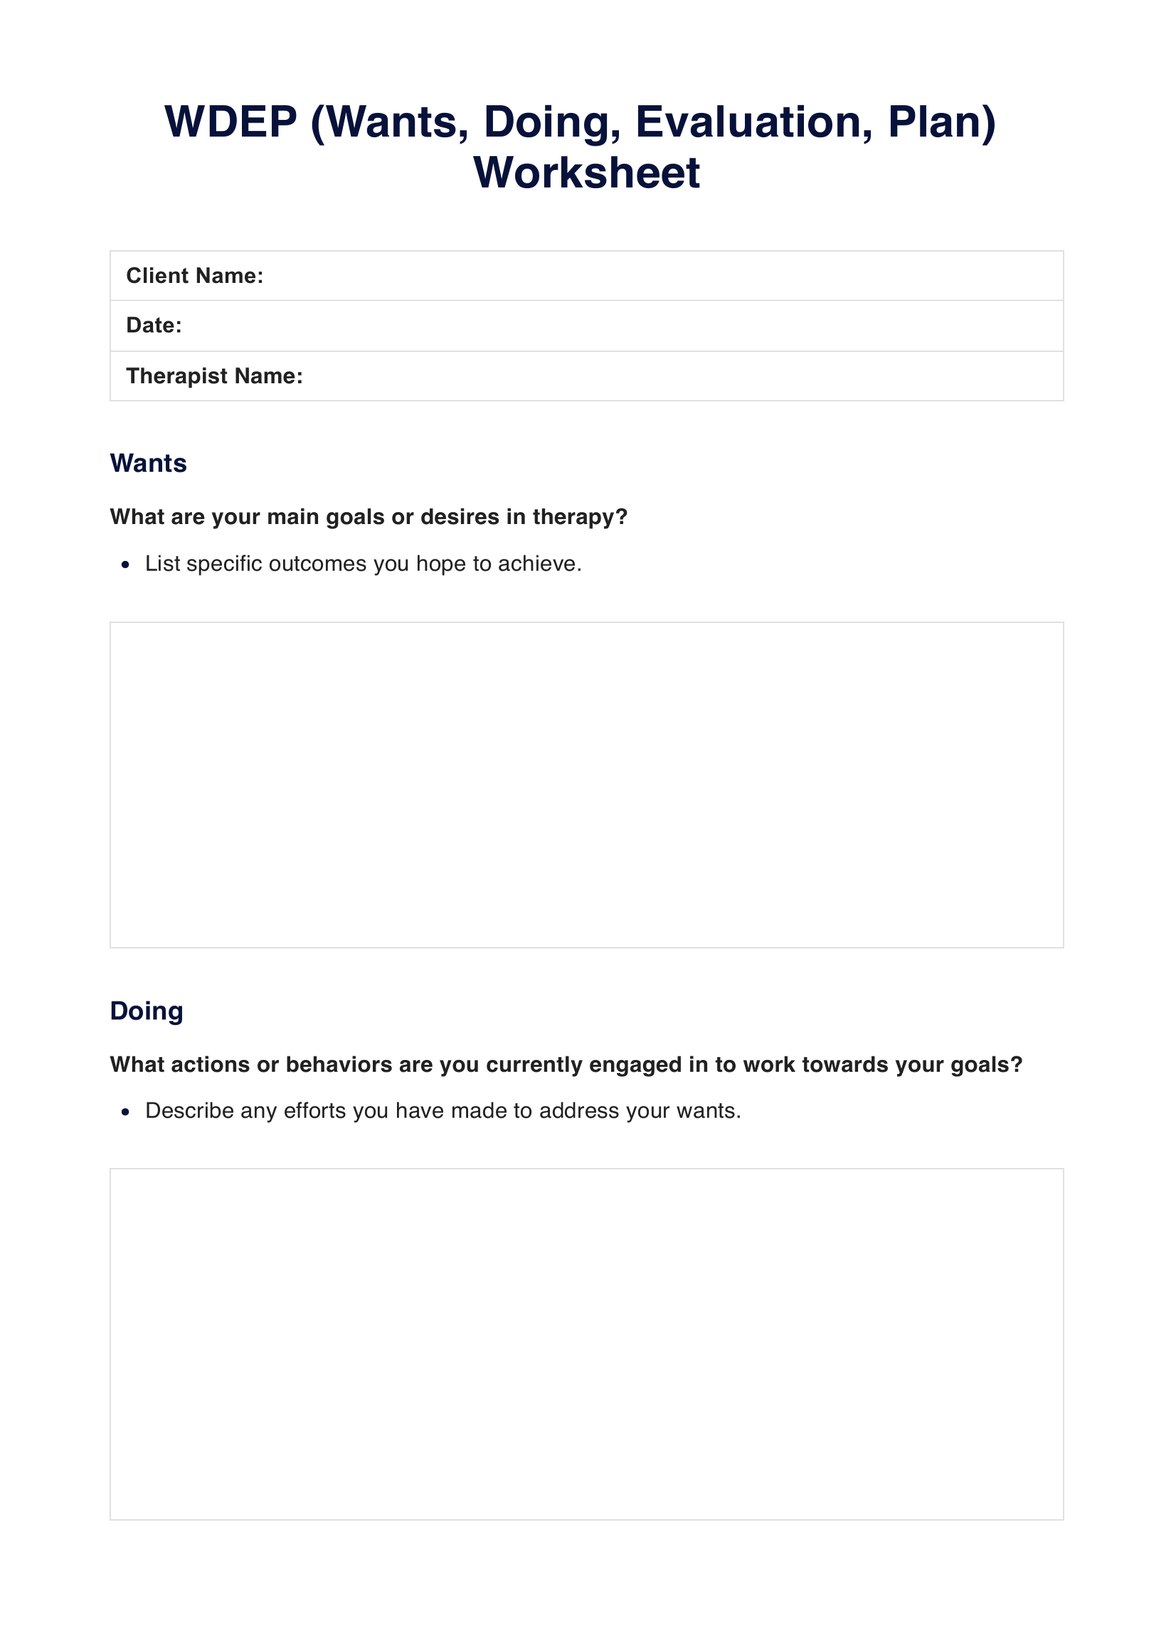 WDEP Worksheet PDF Example